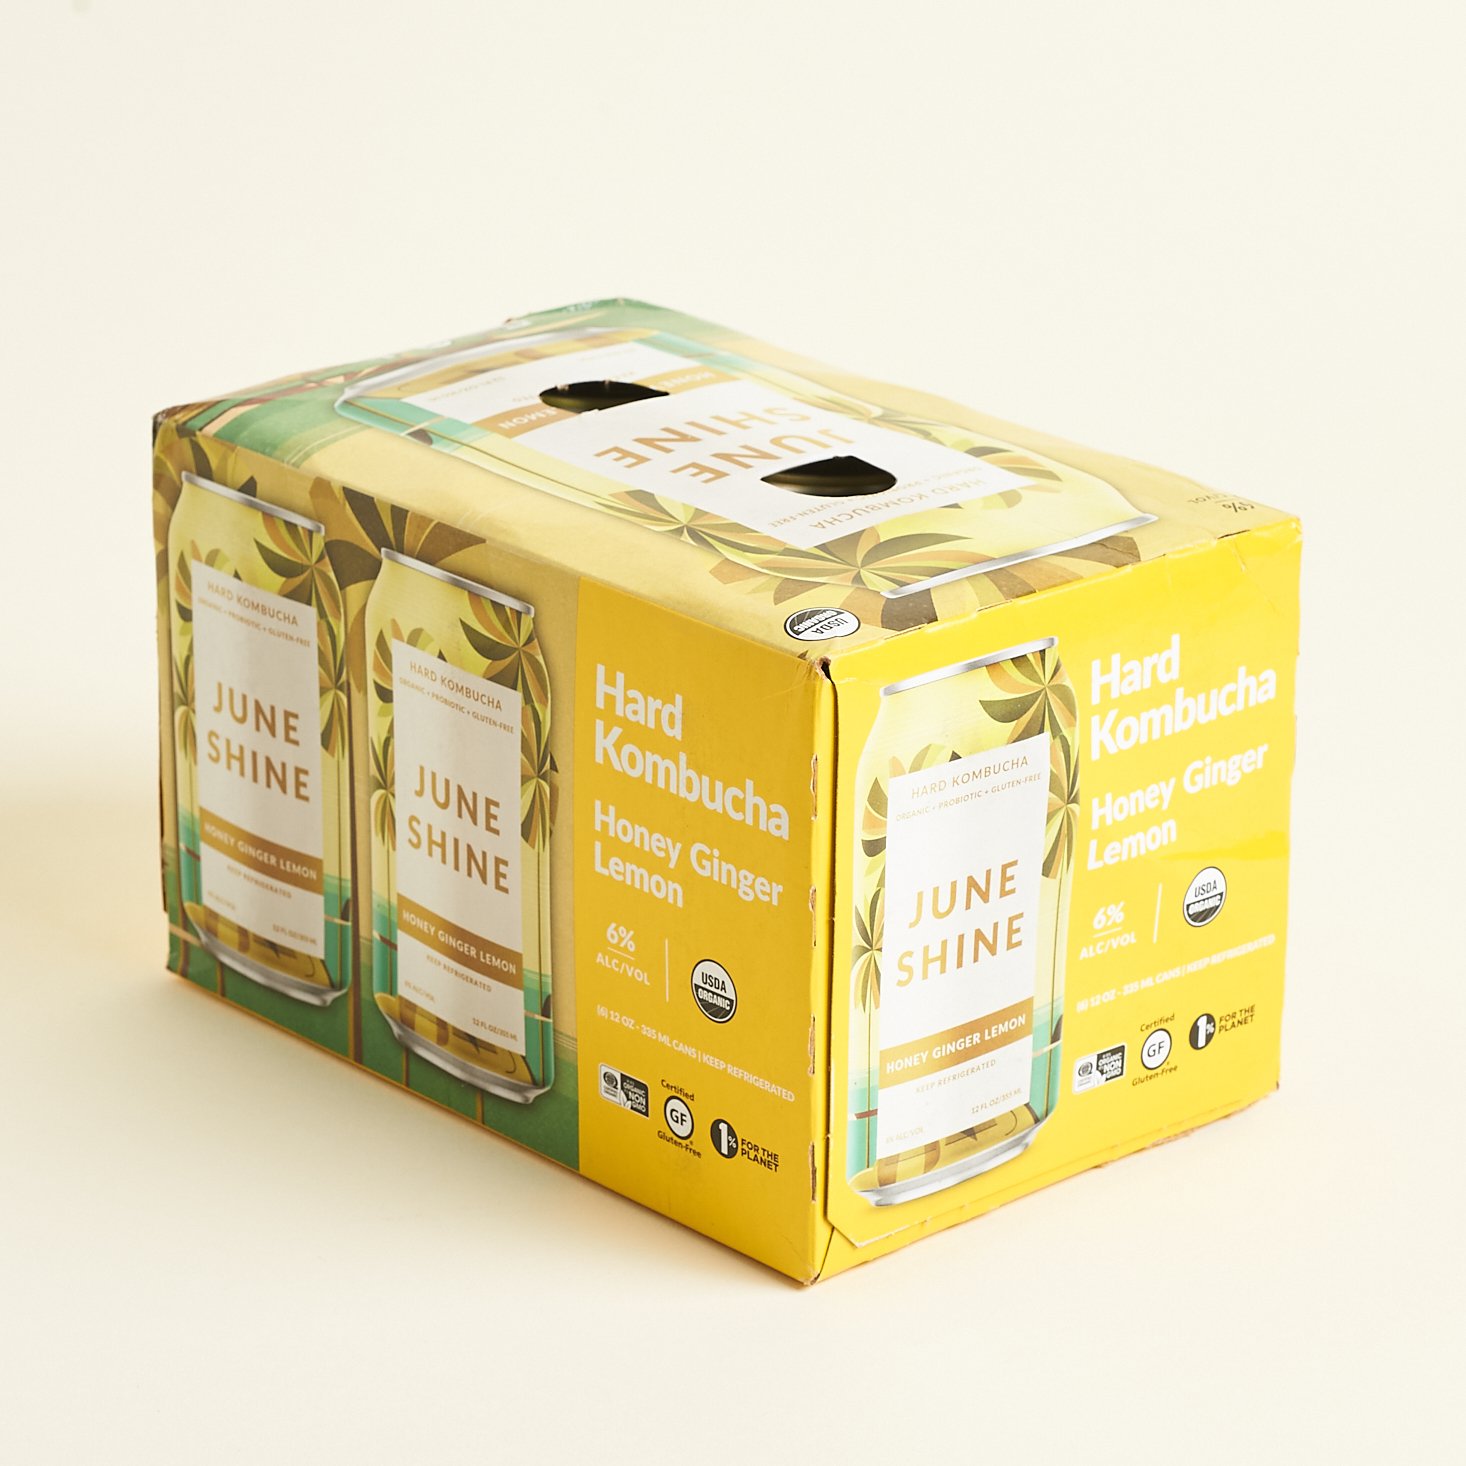 Box Front of Honey Ginger Lemon for JuneShine Sampler Pack